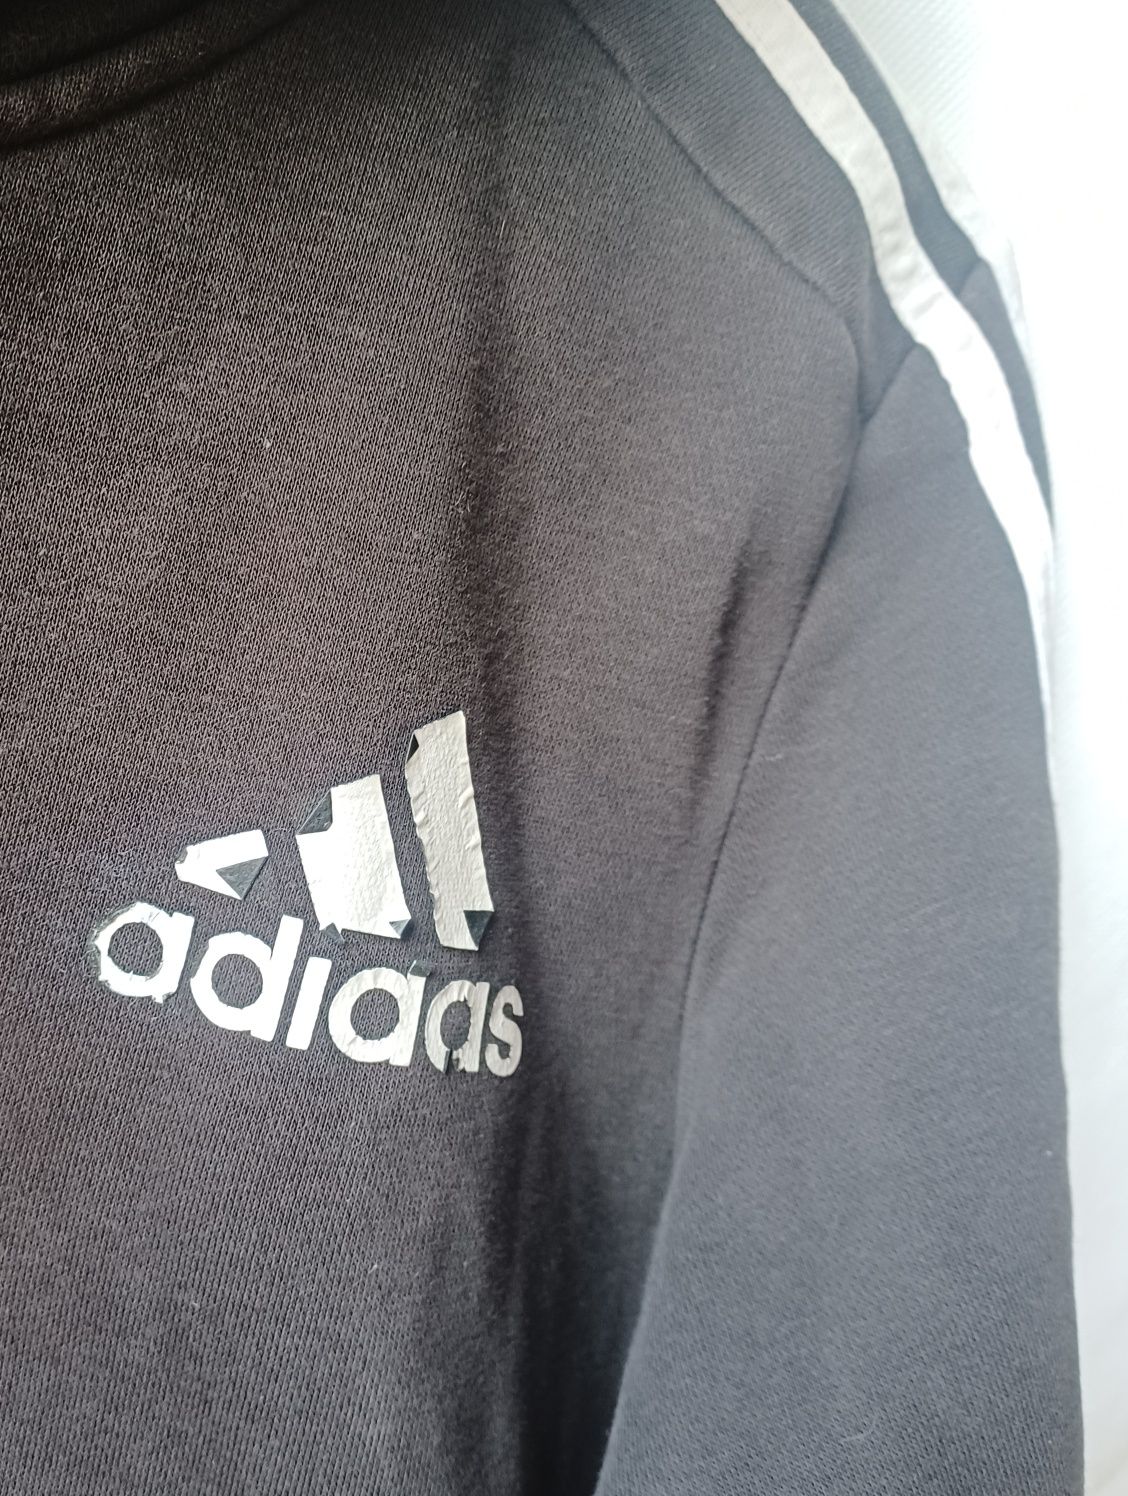 Adidas Originals bluza czarna trzy białe paski chłopięca 164cm 13 14 l